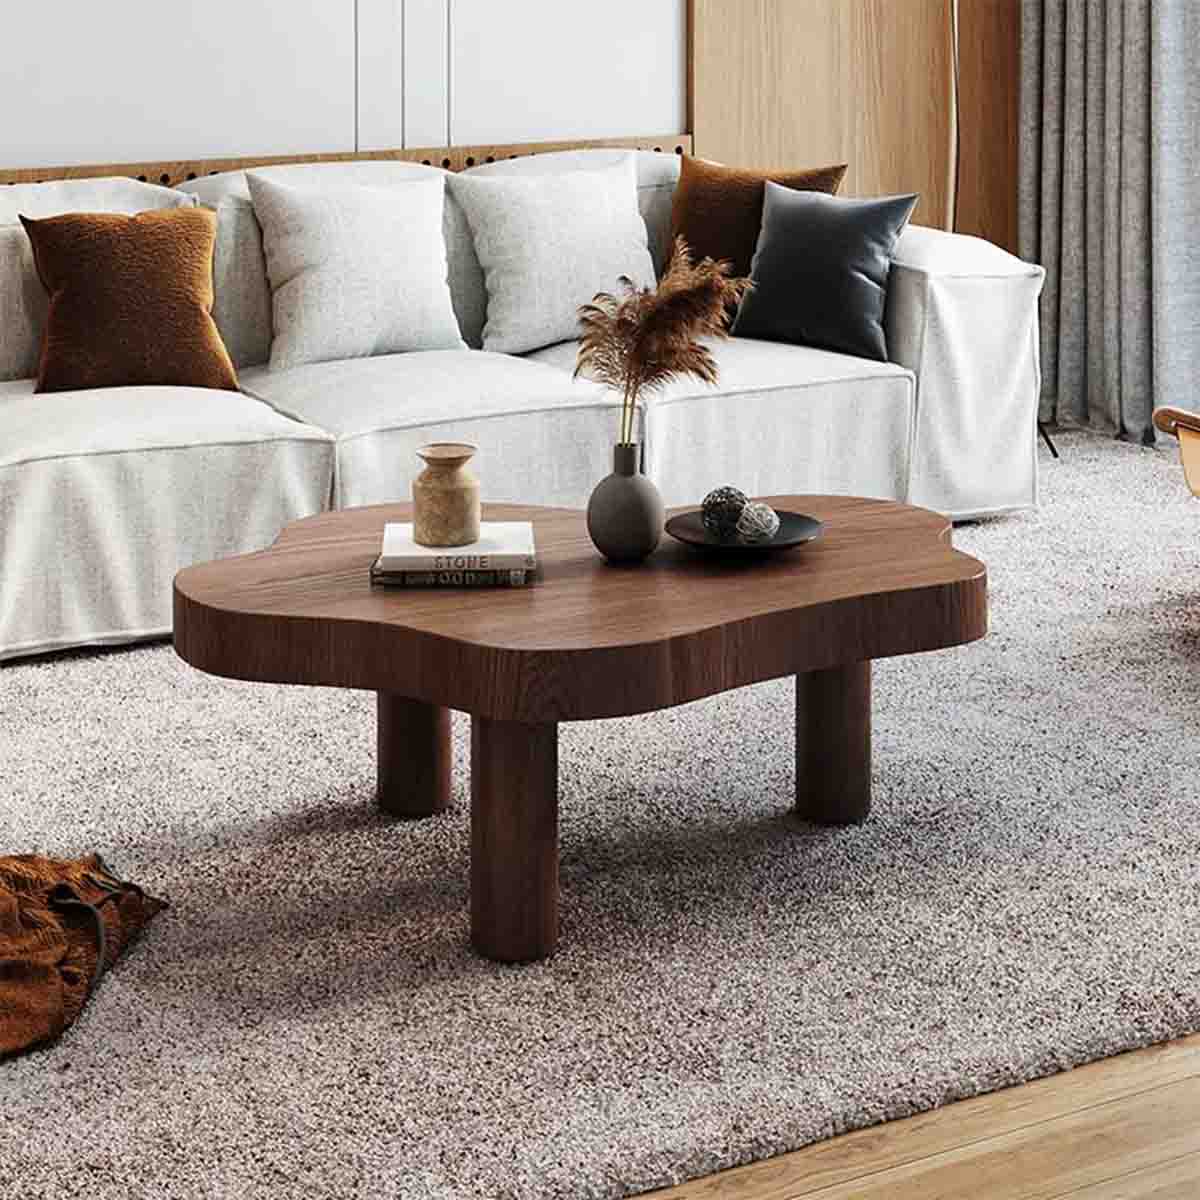 میز جلو مبلی چوبی به شکل ارگانیک